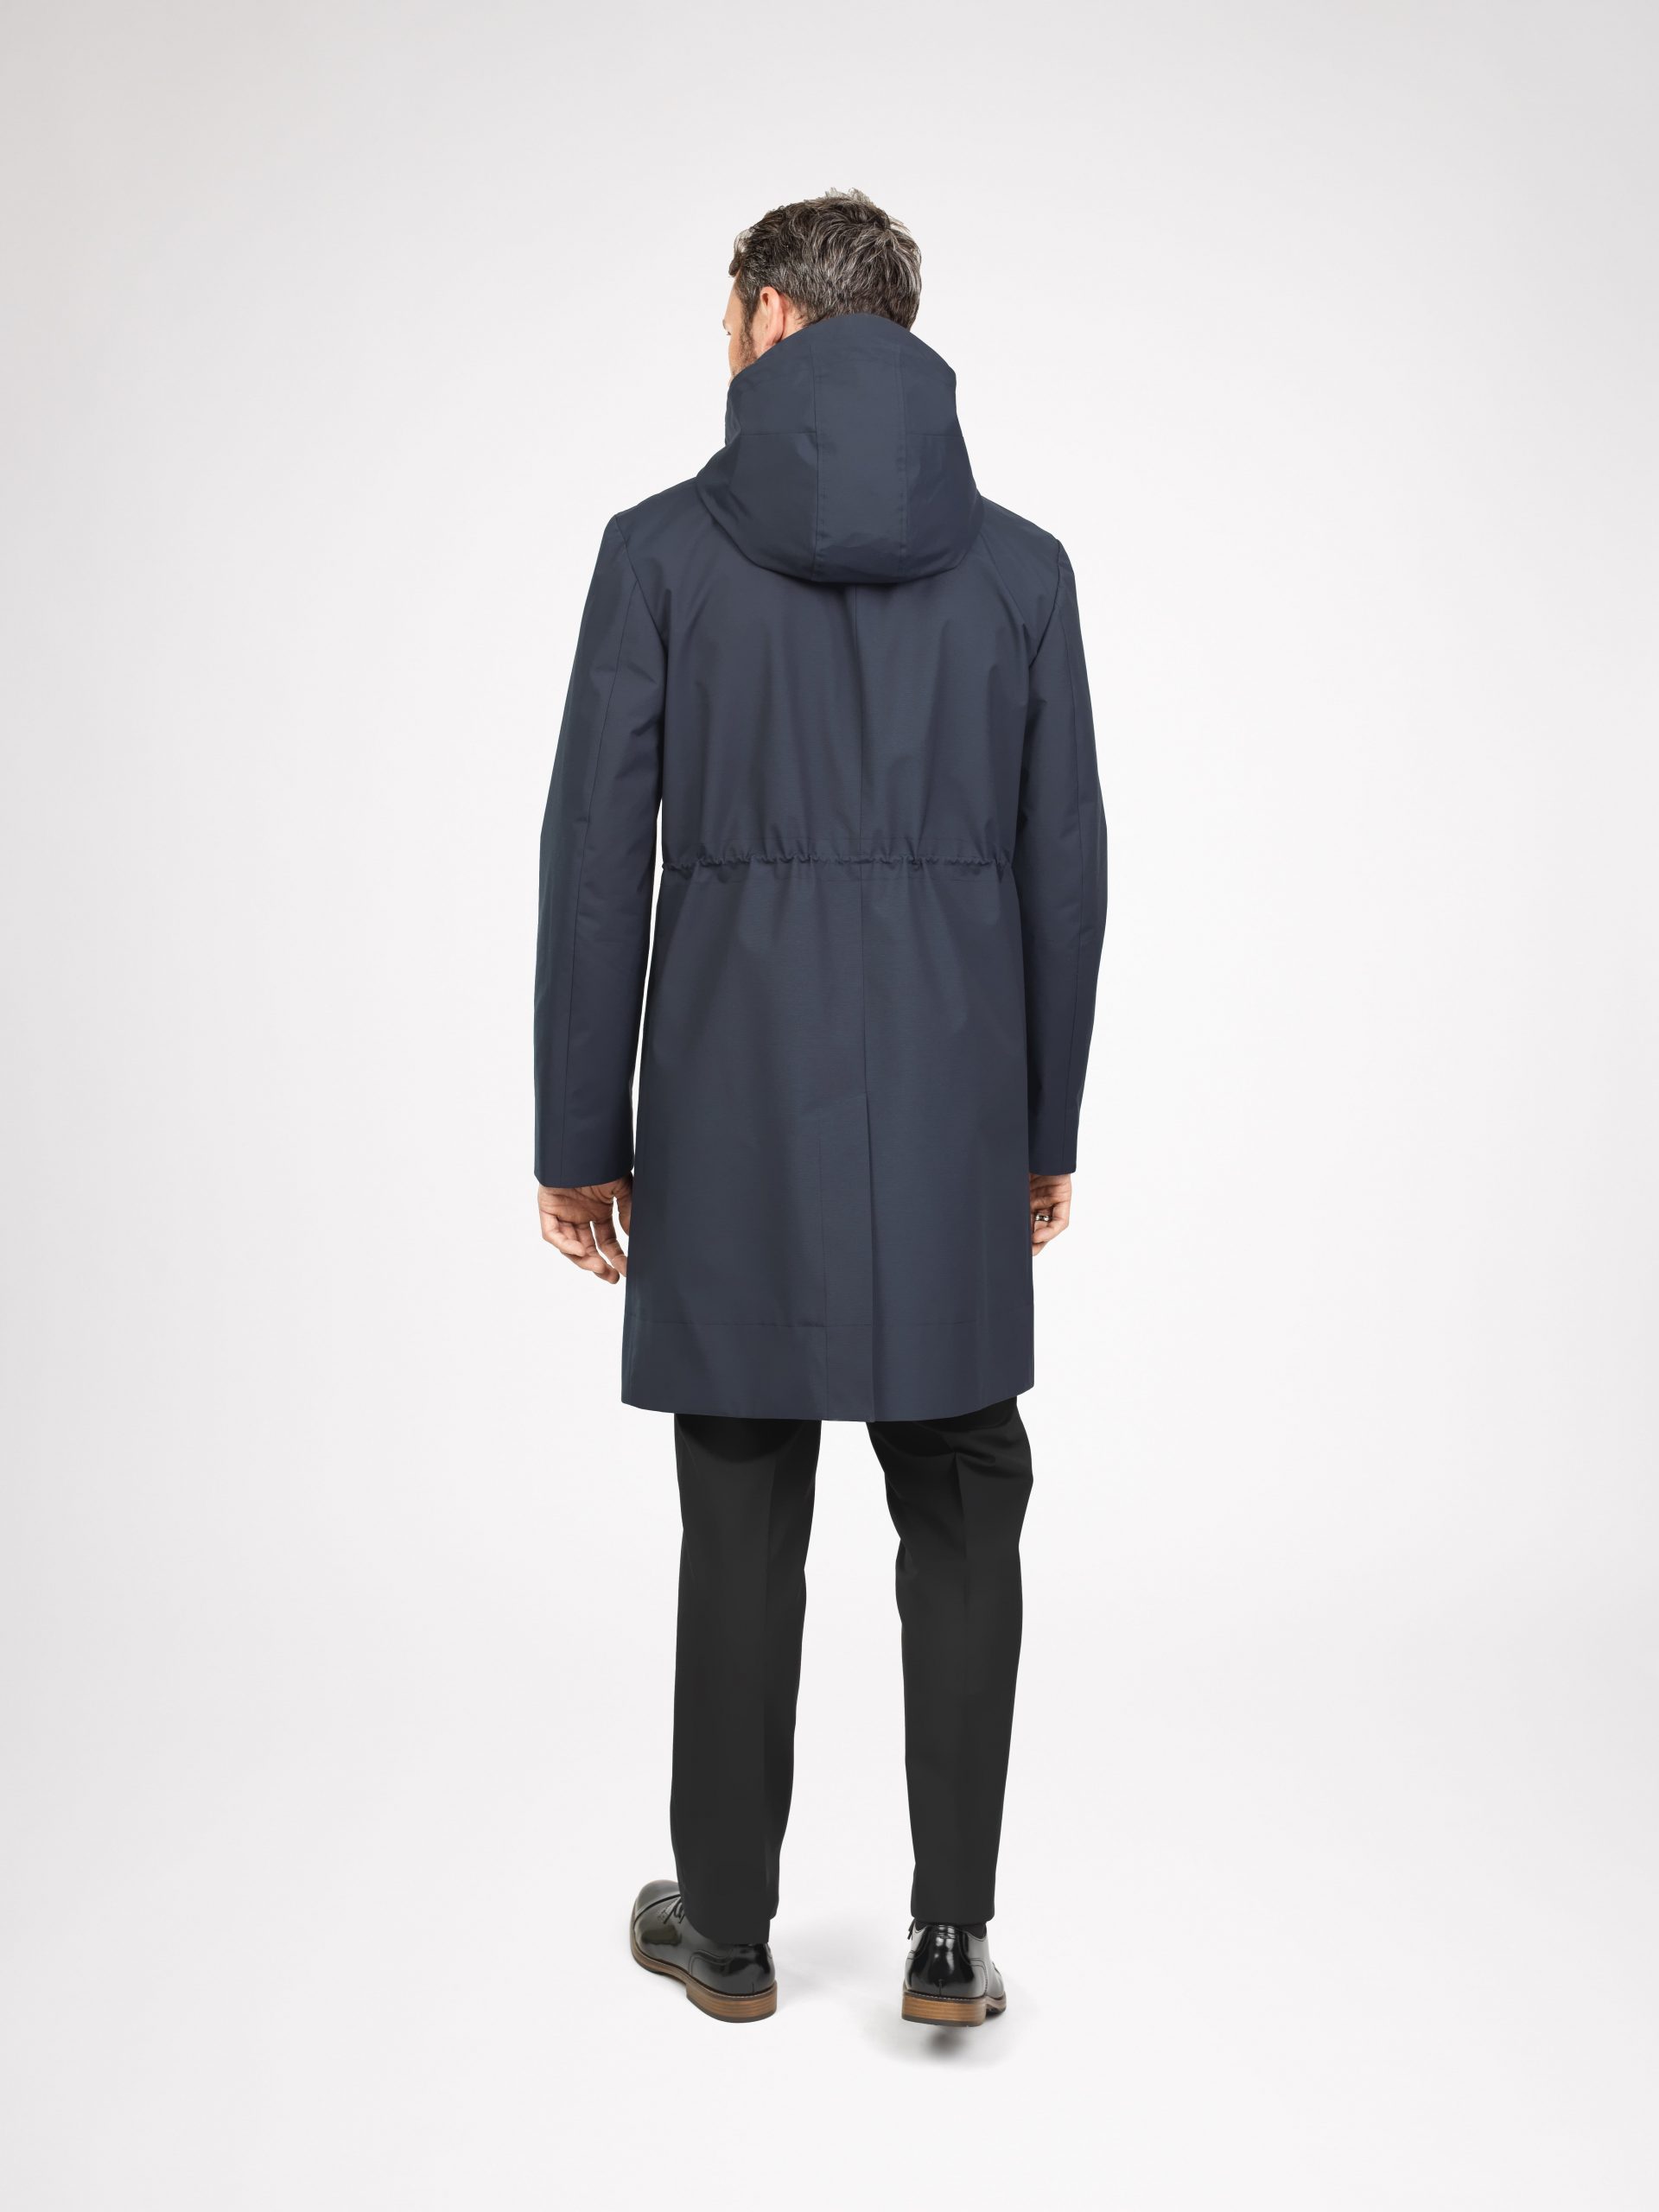 Unisex raincoat